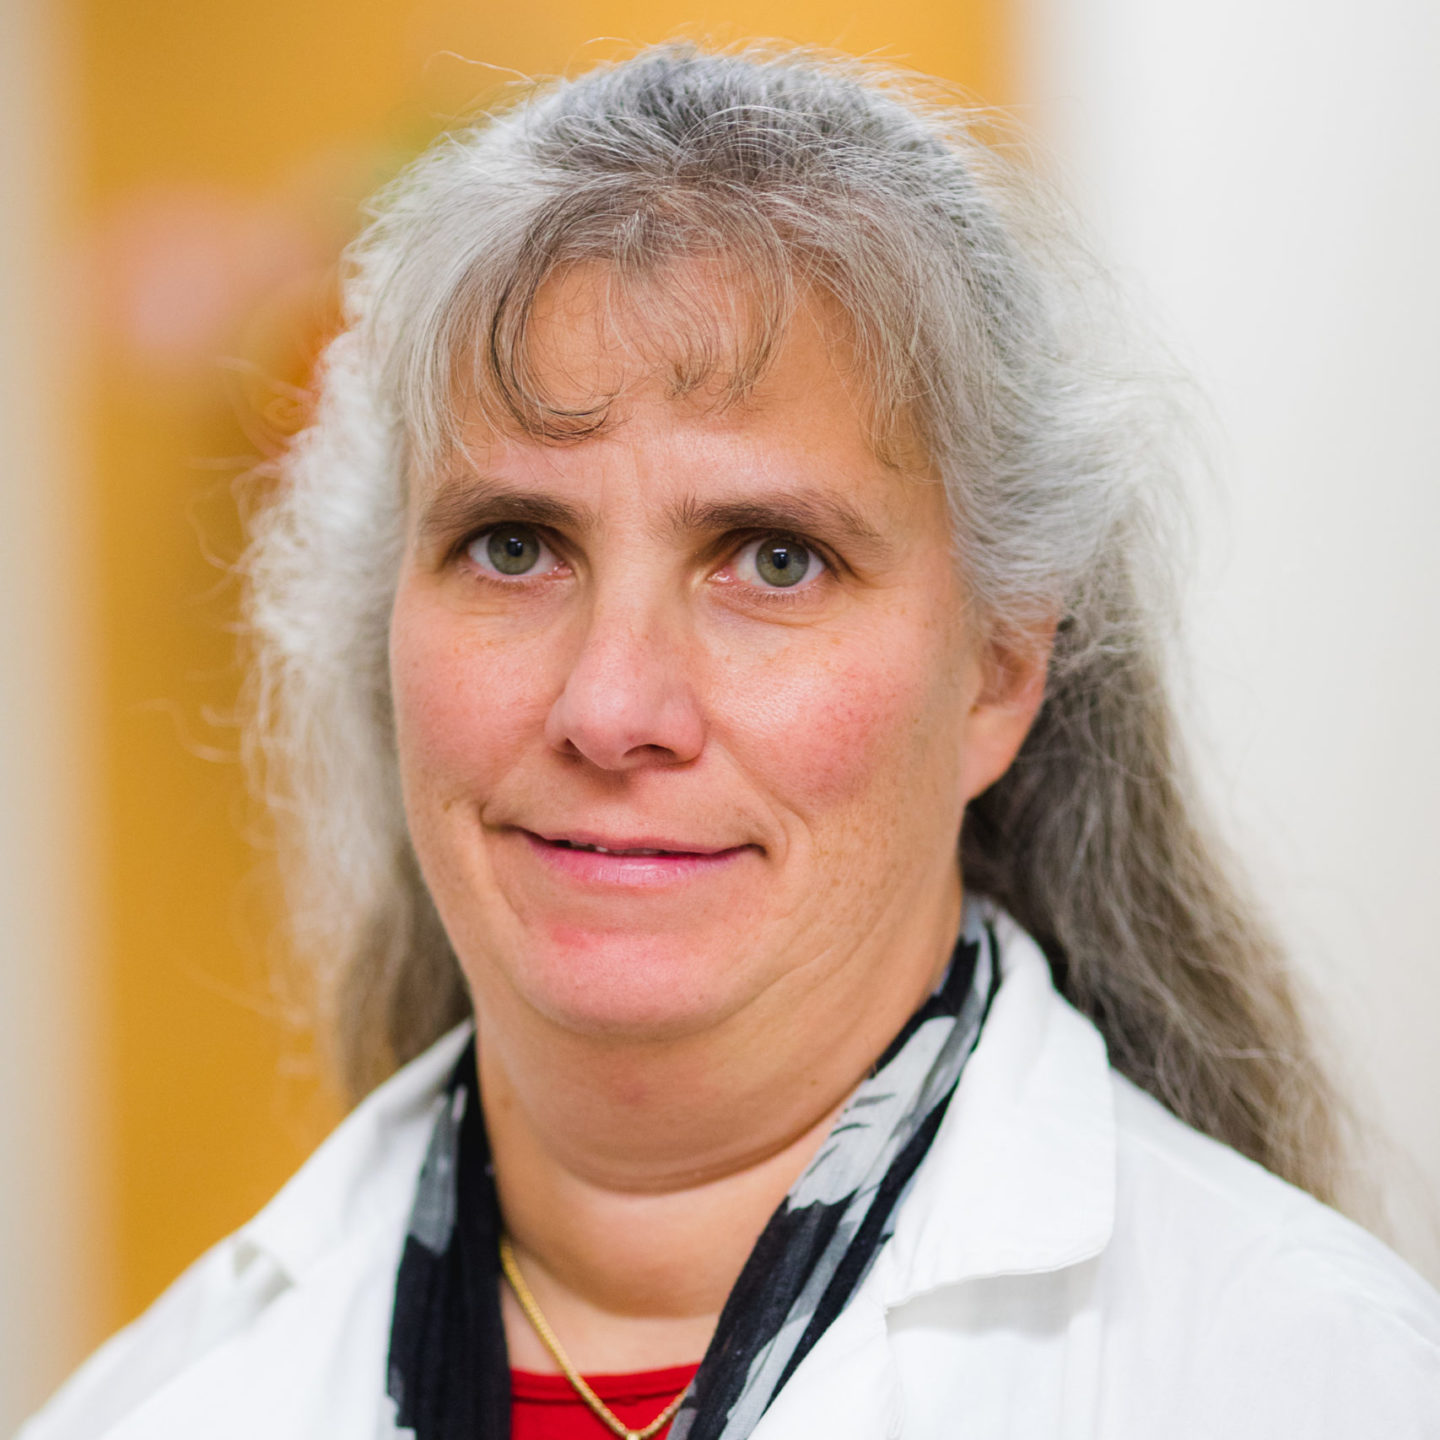 Dr. Kimberly Augenstein